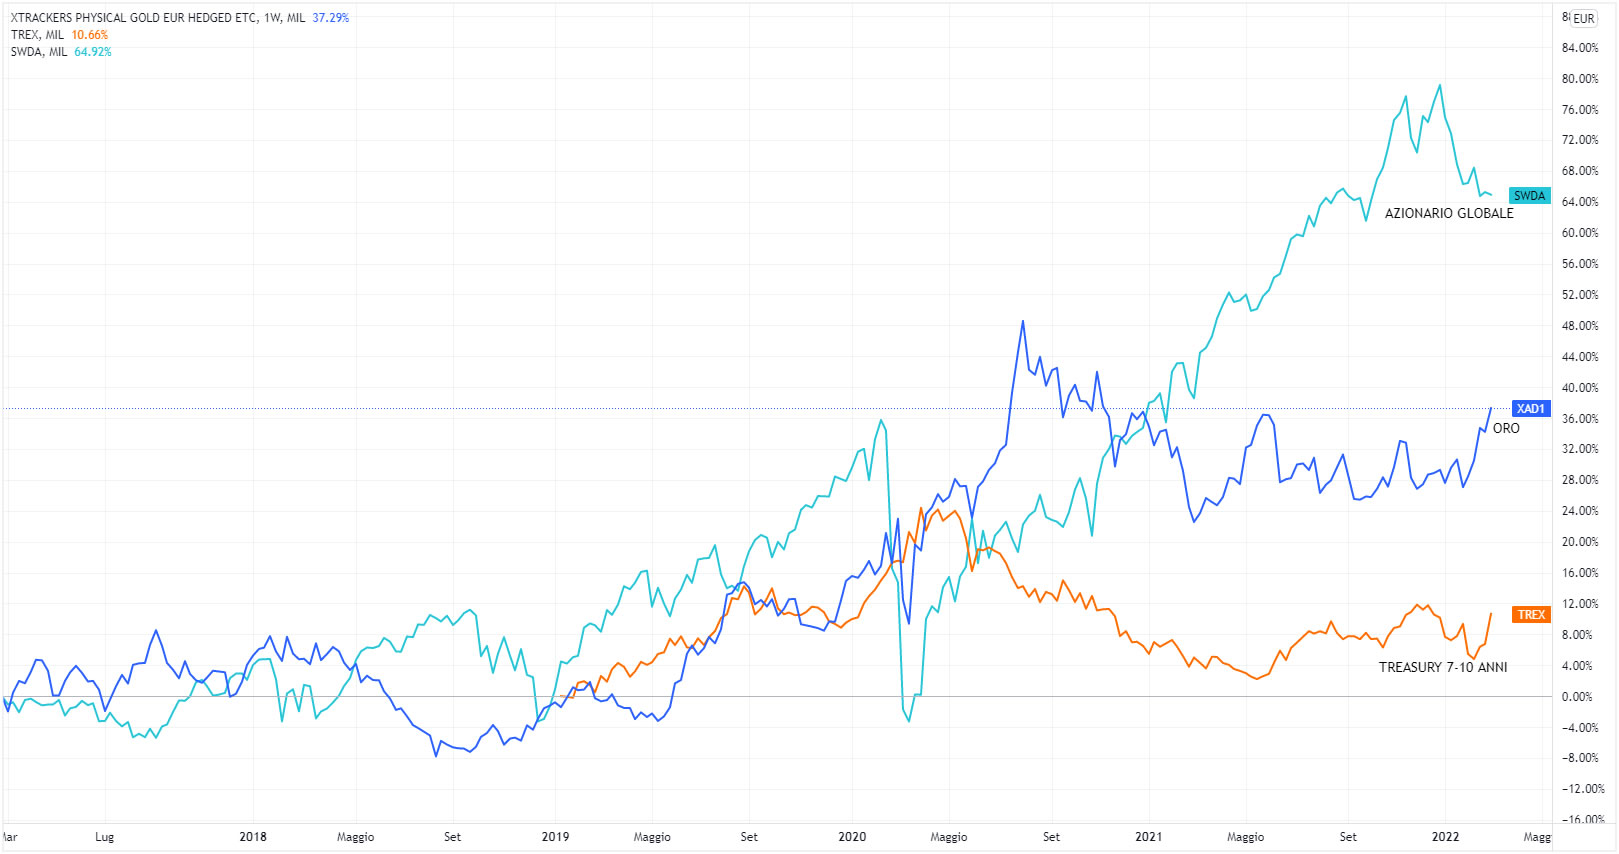 Andamenti degli ETF che replicano oro, l'azionario globale e i Treasury nel lungo periodo.